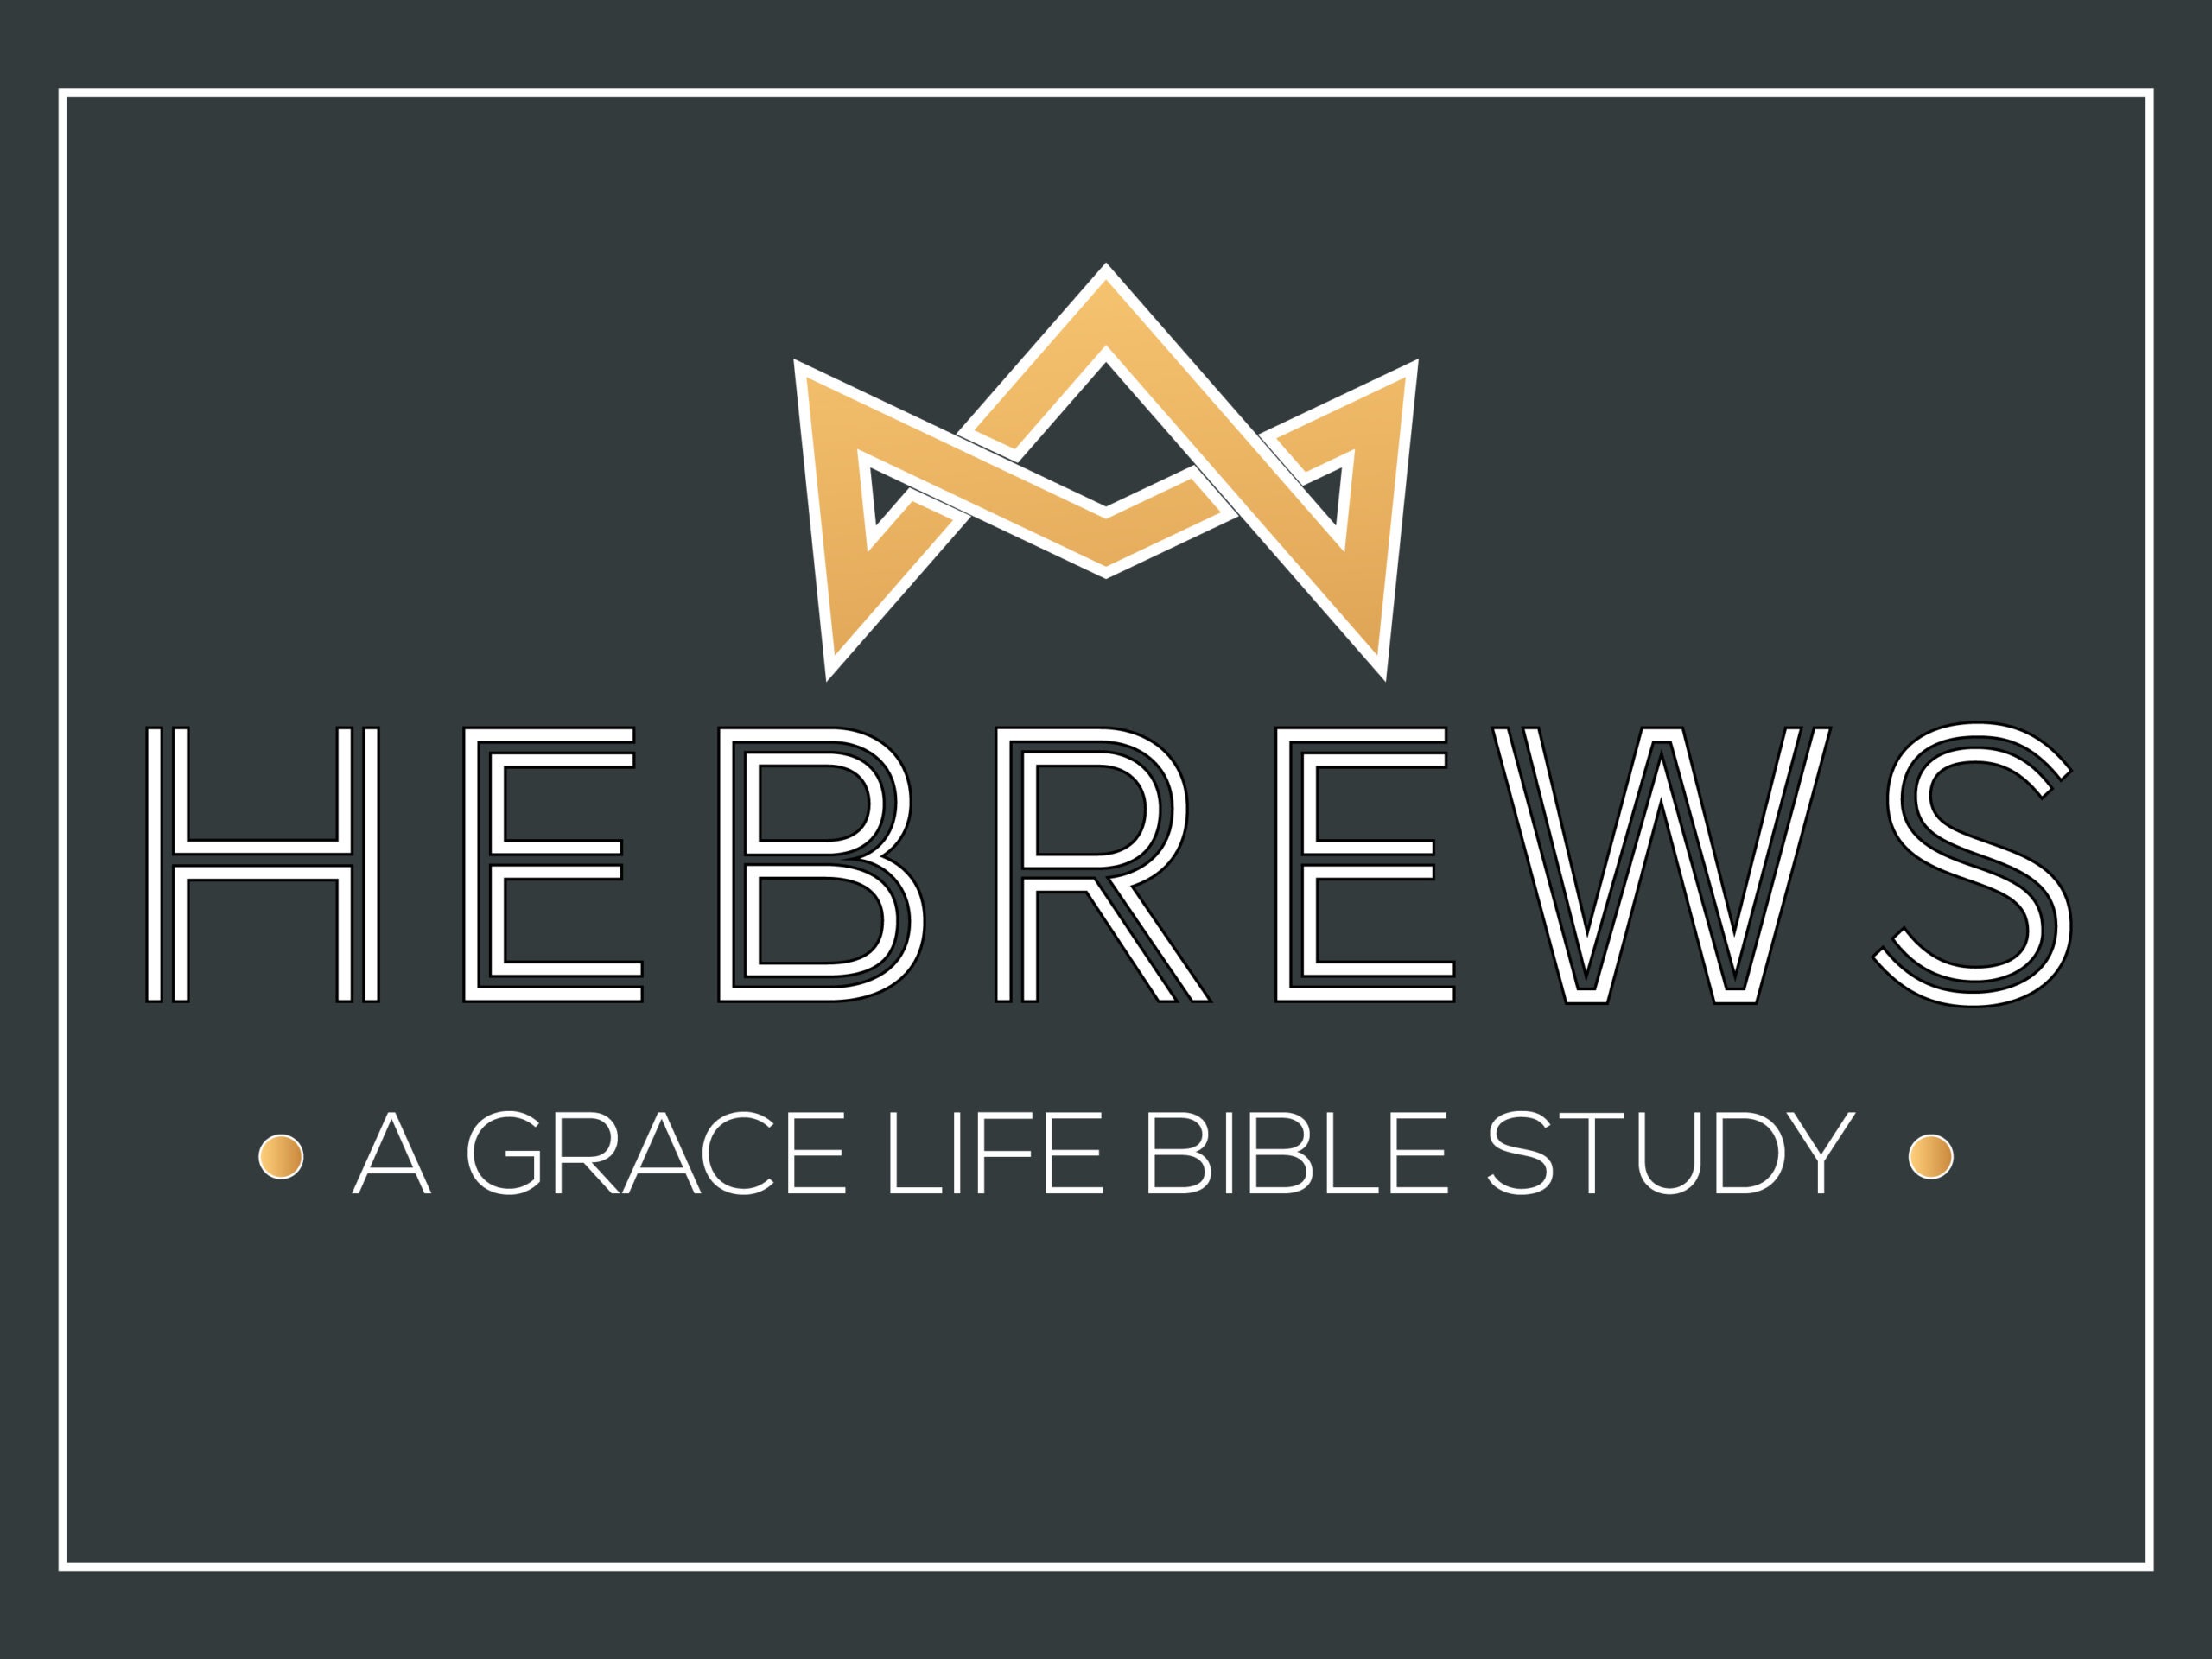 A Study on Hebrews 6:13-20